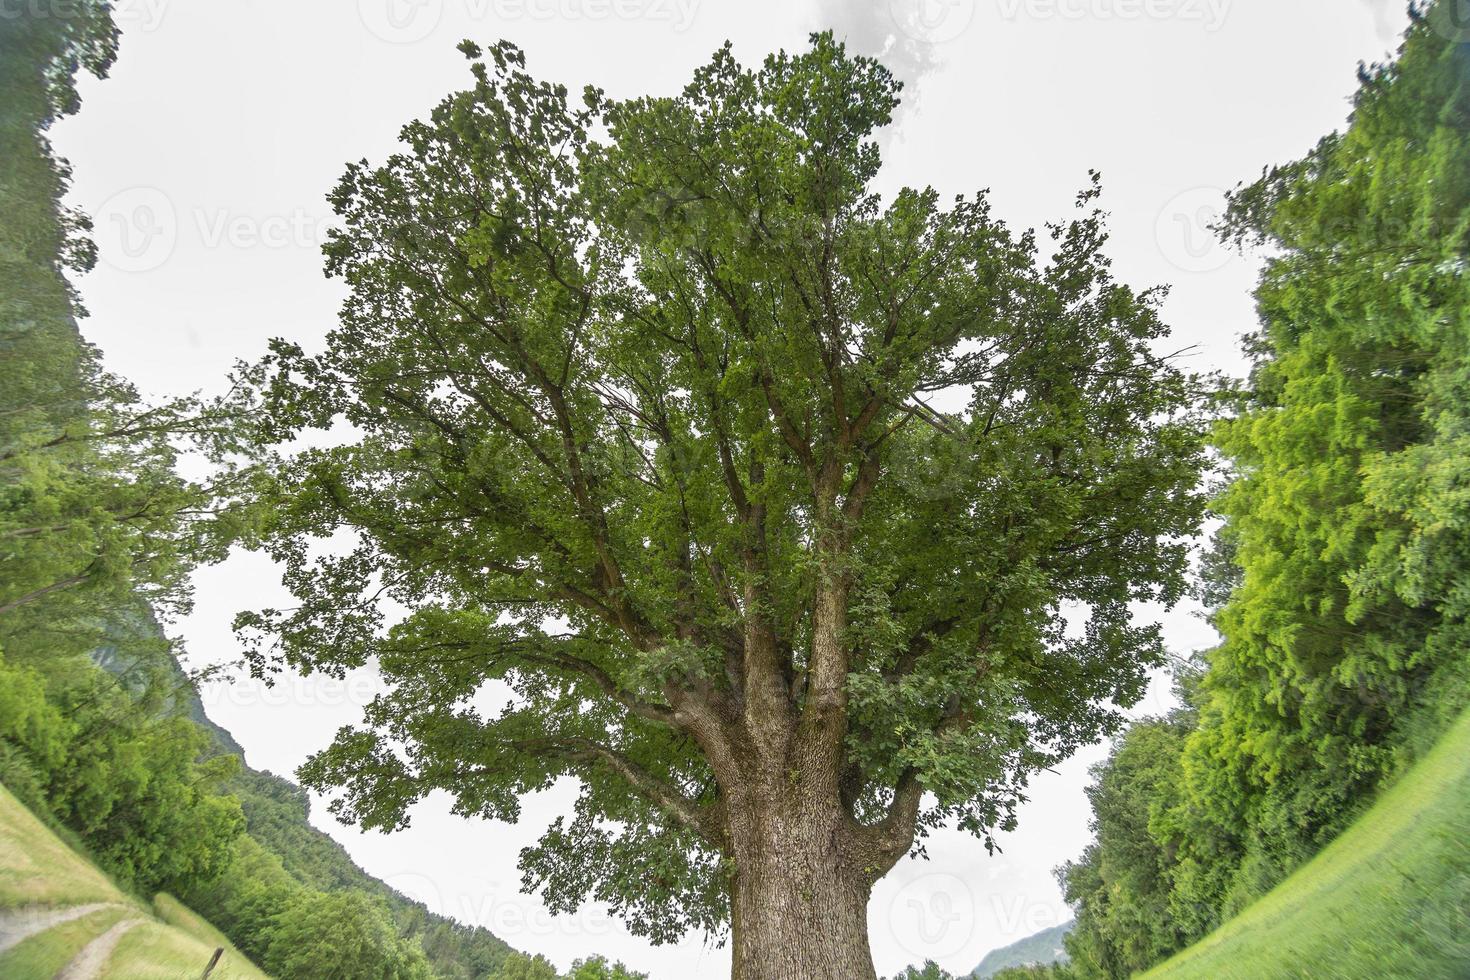 old centenary oak tree photo